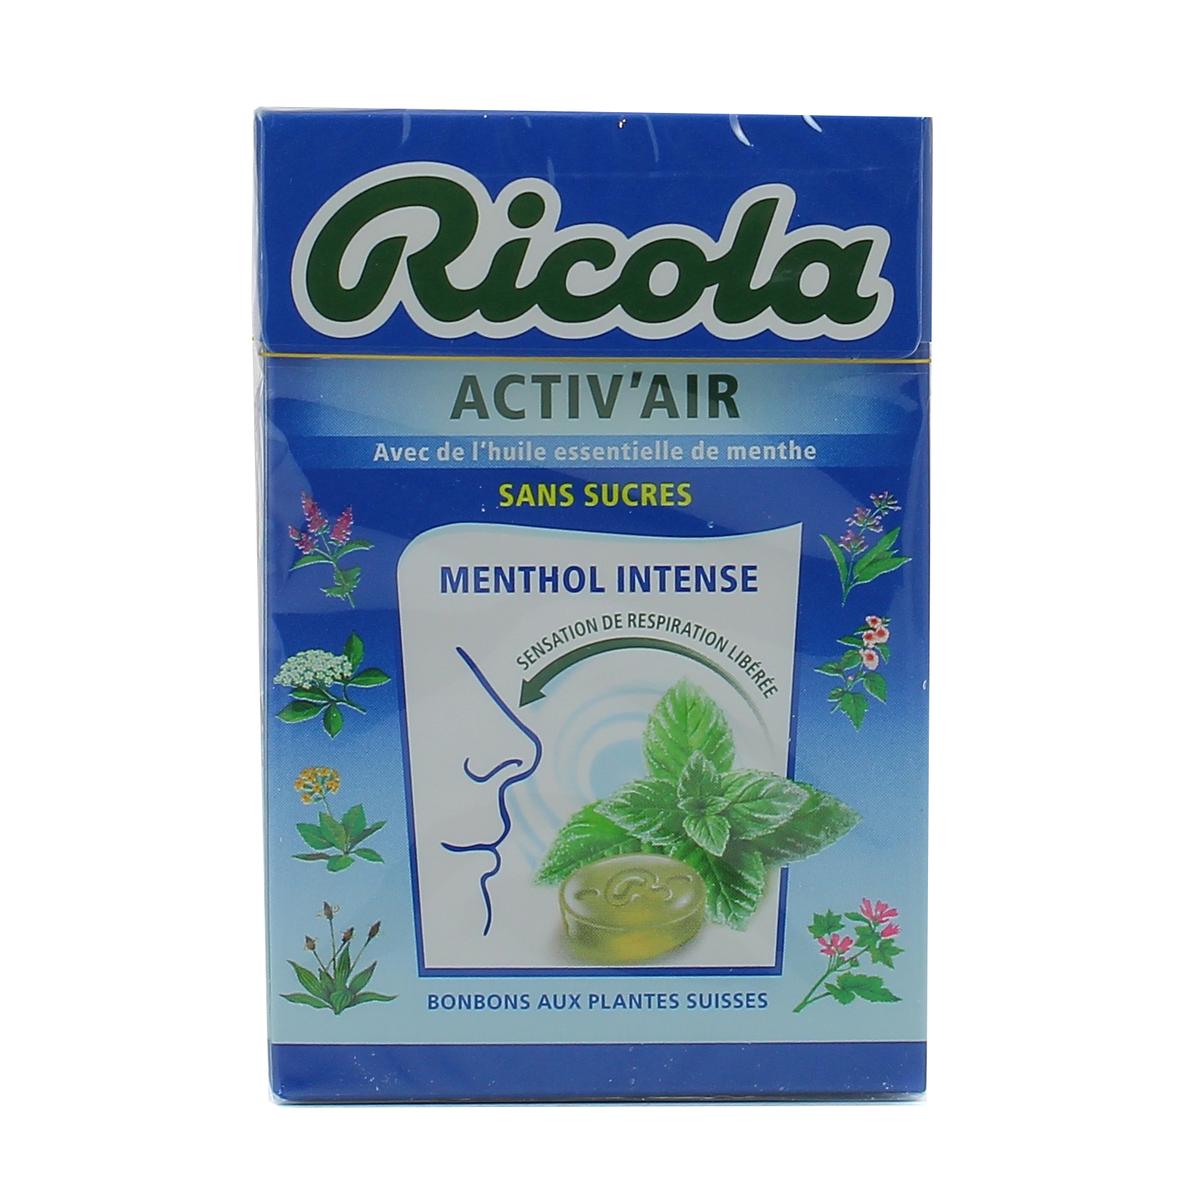 Ricola Activ'air Citron s/sucre 50g